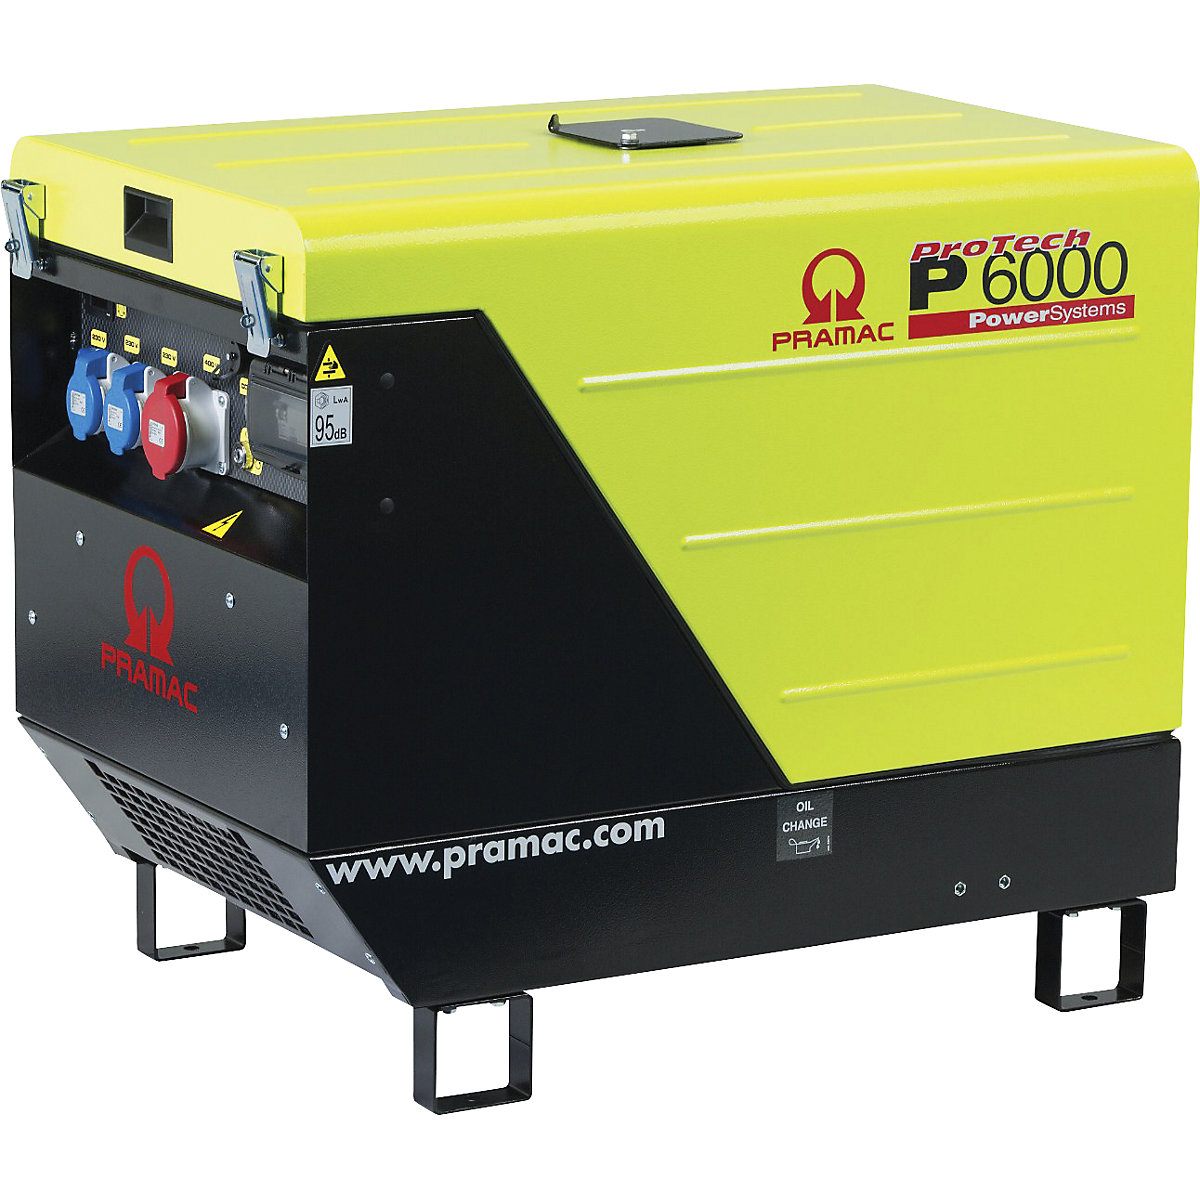 Generatore di corrente serie P, diesel, 400/230 V – Pramac